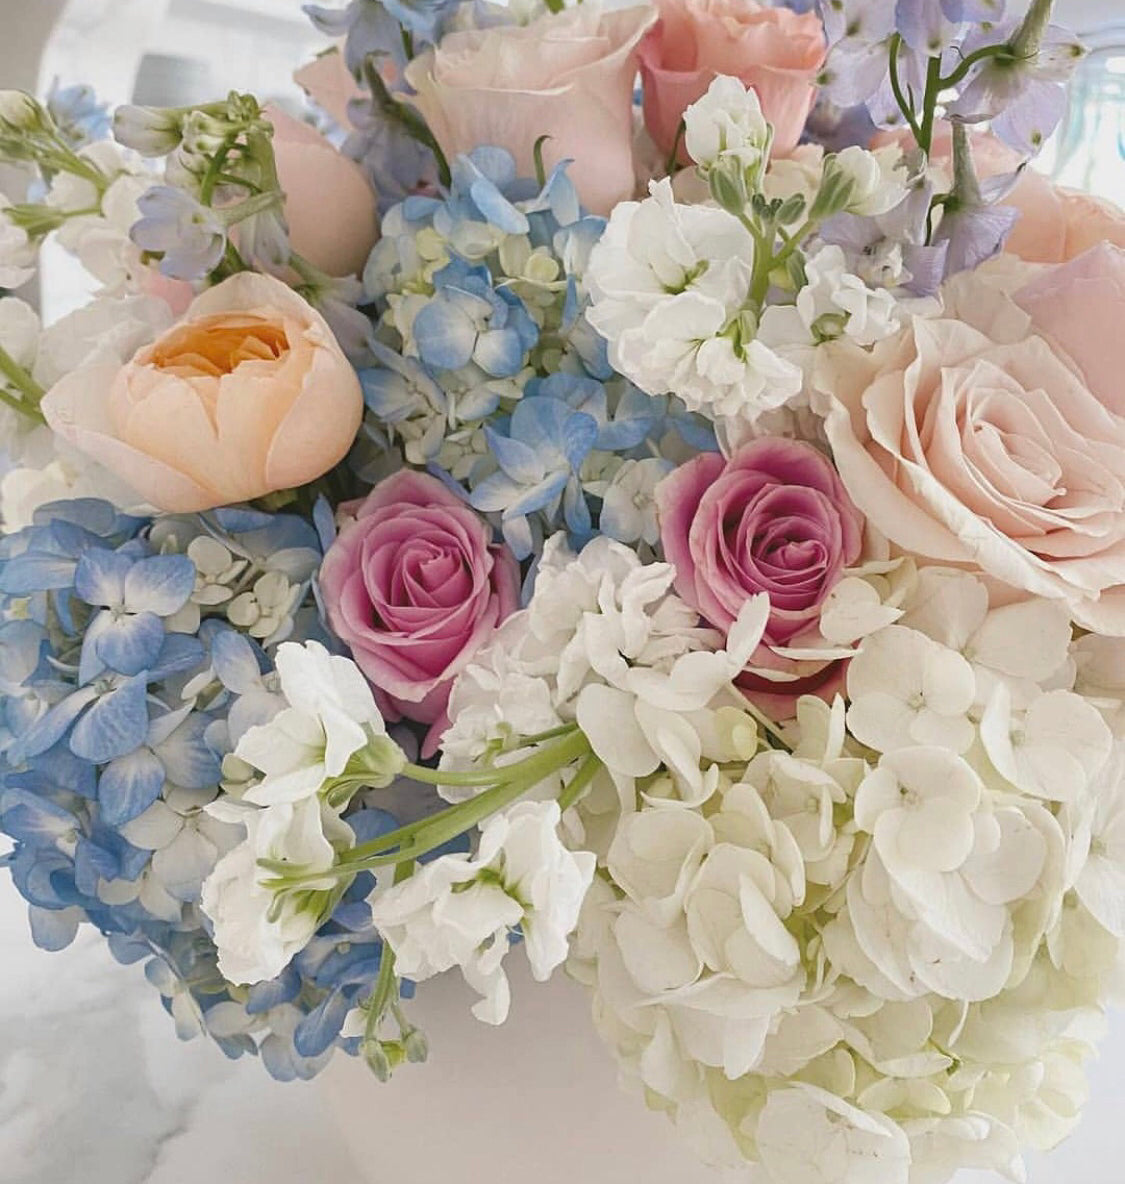 Soft coloured mixed floral arrangement